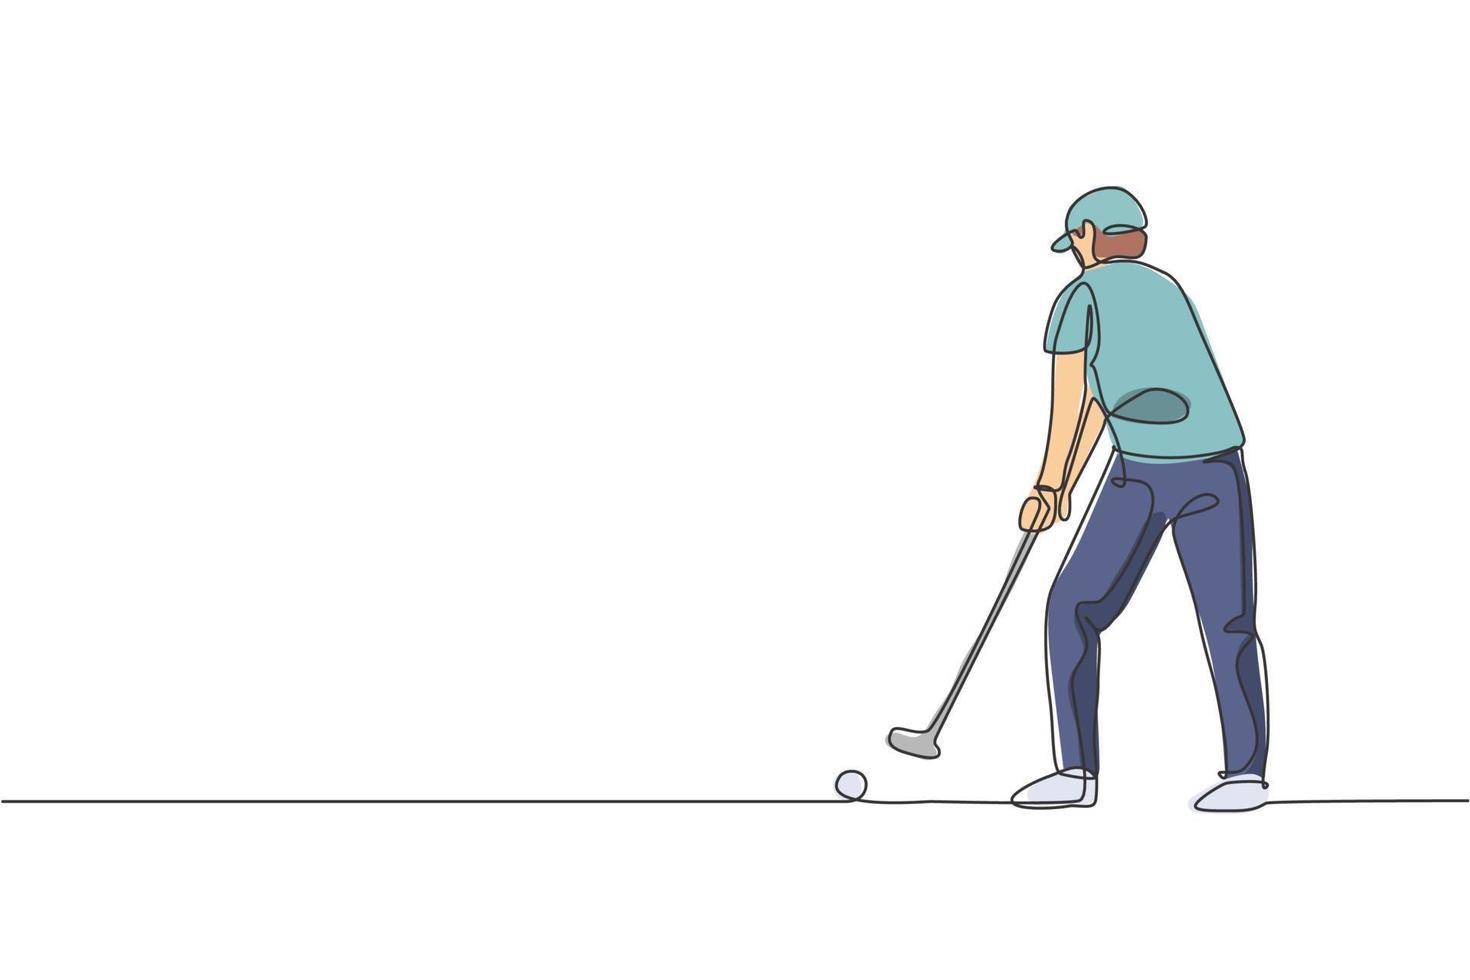 eine durchgehende strichzeichnung des jungen golfspielers schwingt den golfschläger und schlägt den ball. Freizeitsportkonzept. dynamische Single-Line-Draw-Design-Vektorgrafik-Illustration für Turnier-Promotion-Medien vektor